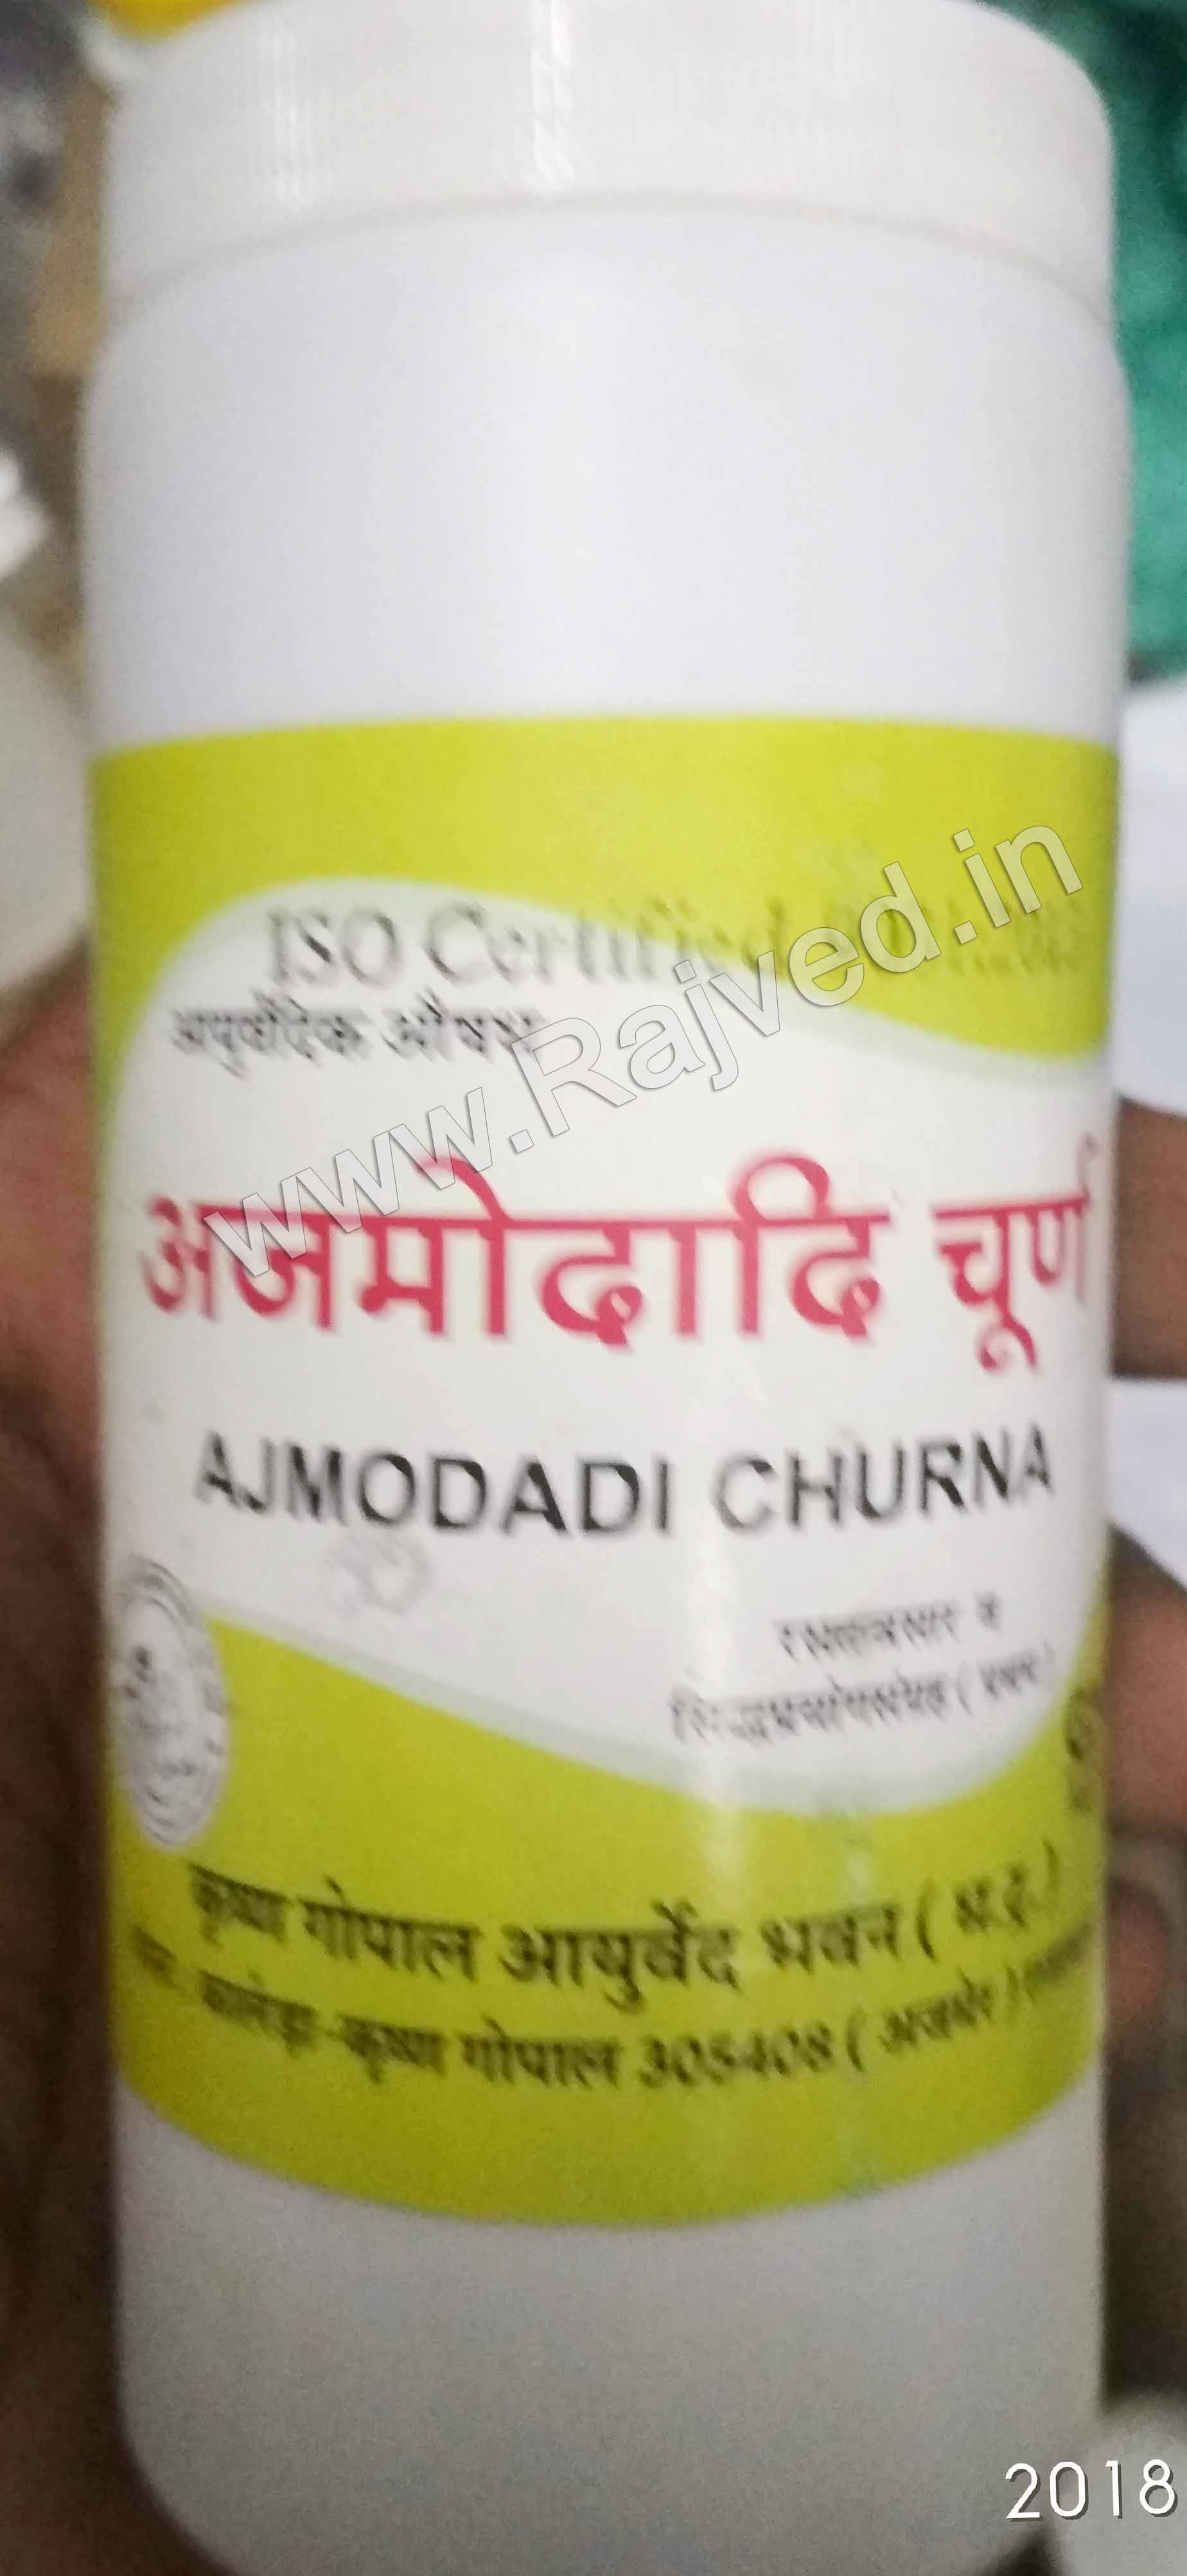 ajmodadi churna 1000gm upto 20% off Krishna Gopal Ayurved bhavan